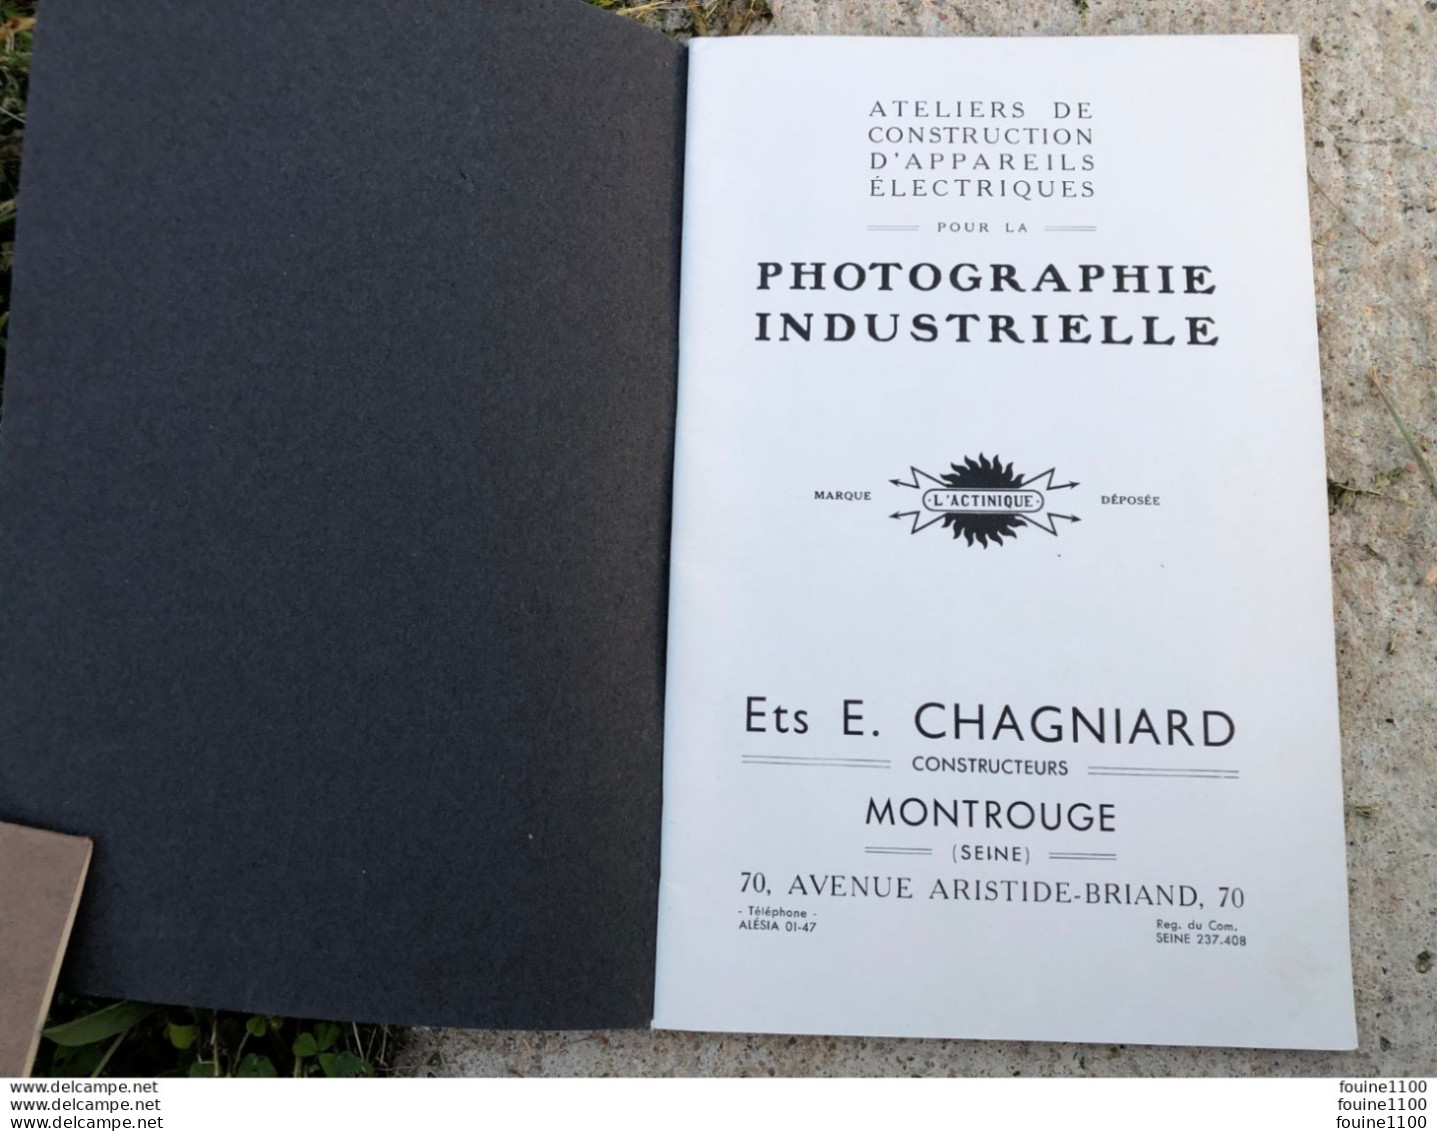 Catalogue L'ACTINIQUE Construction D'appareils électriques Pour Photographie Industrielle Ets E. Chagniard à MONTROUGE - Fotografie